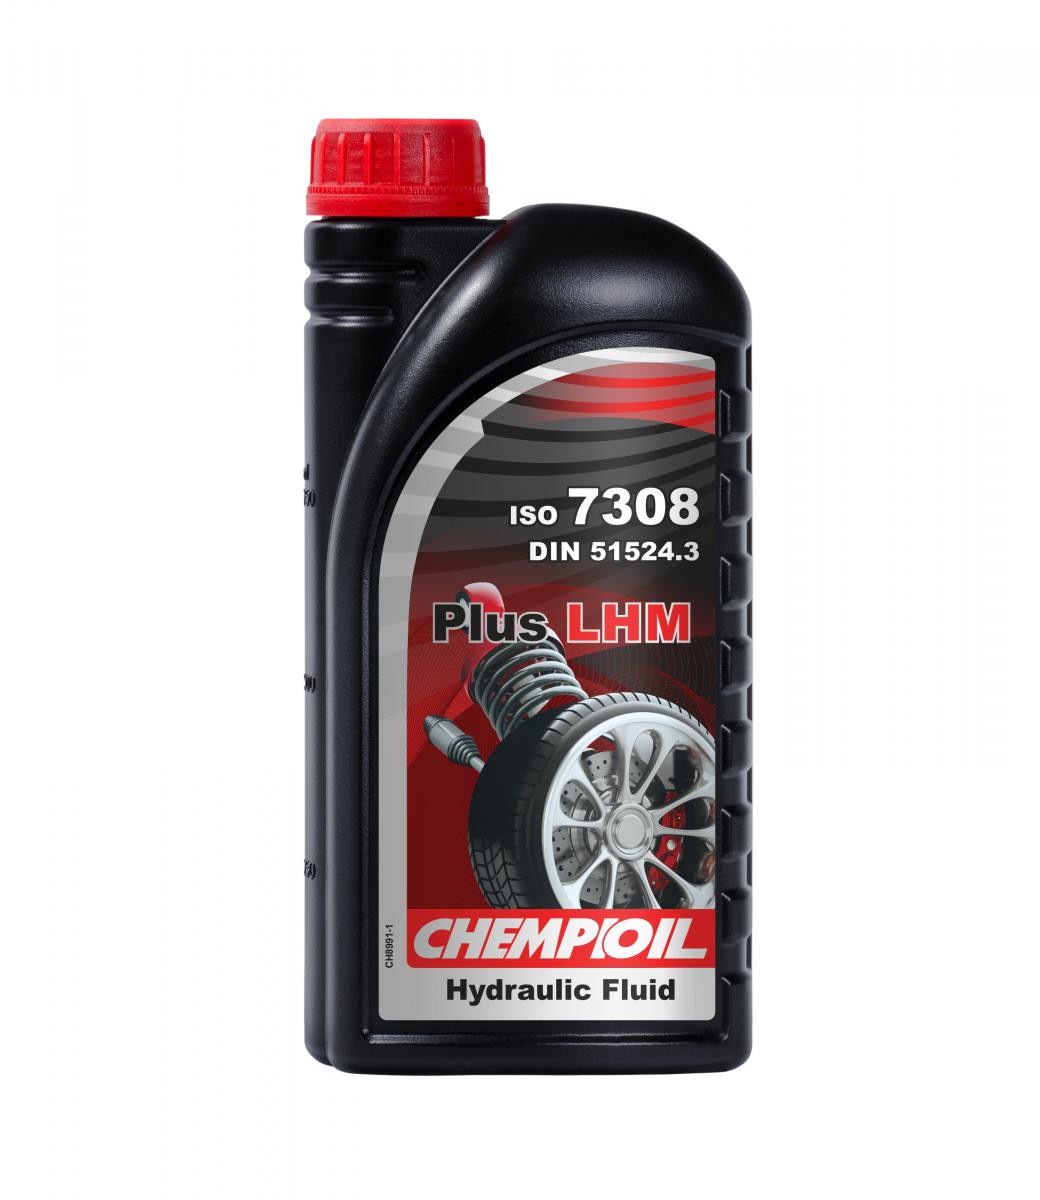 CHEMPIOIL Plus, LHM CH8991-1 Liquido sterzo comprare